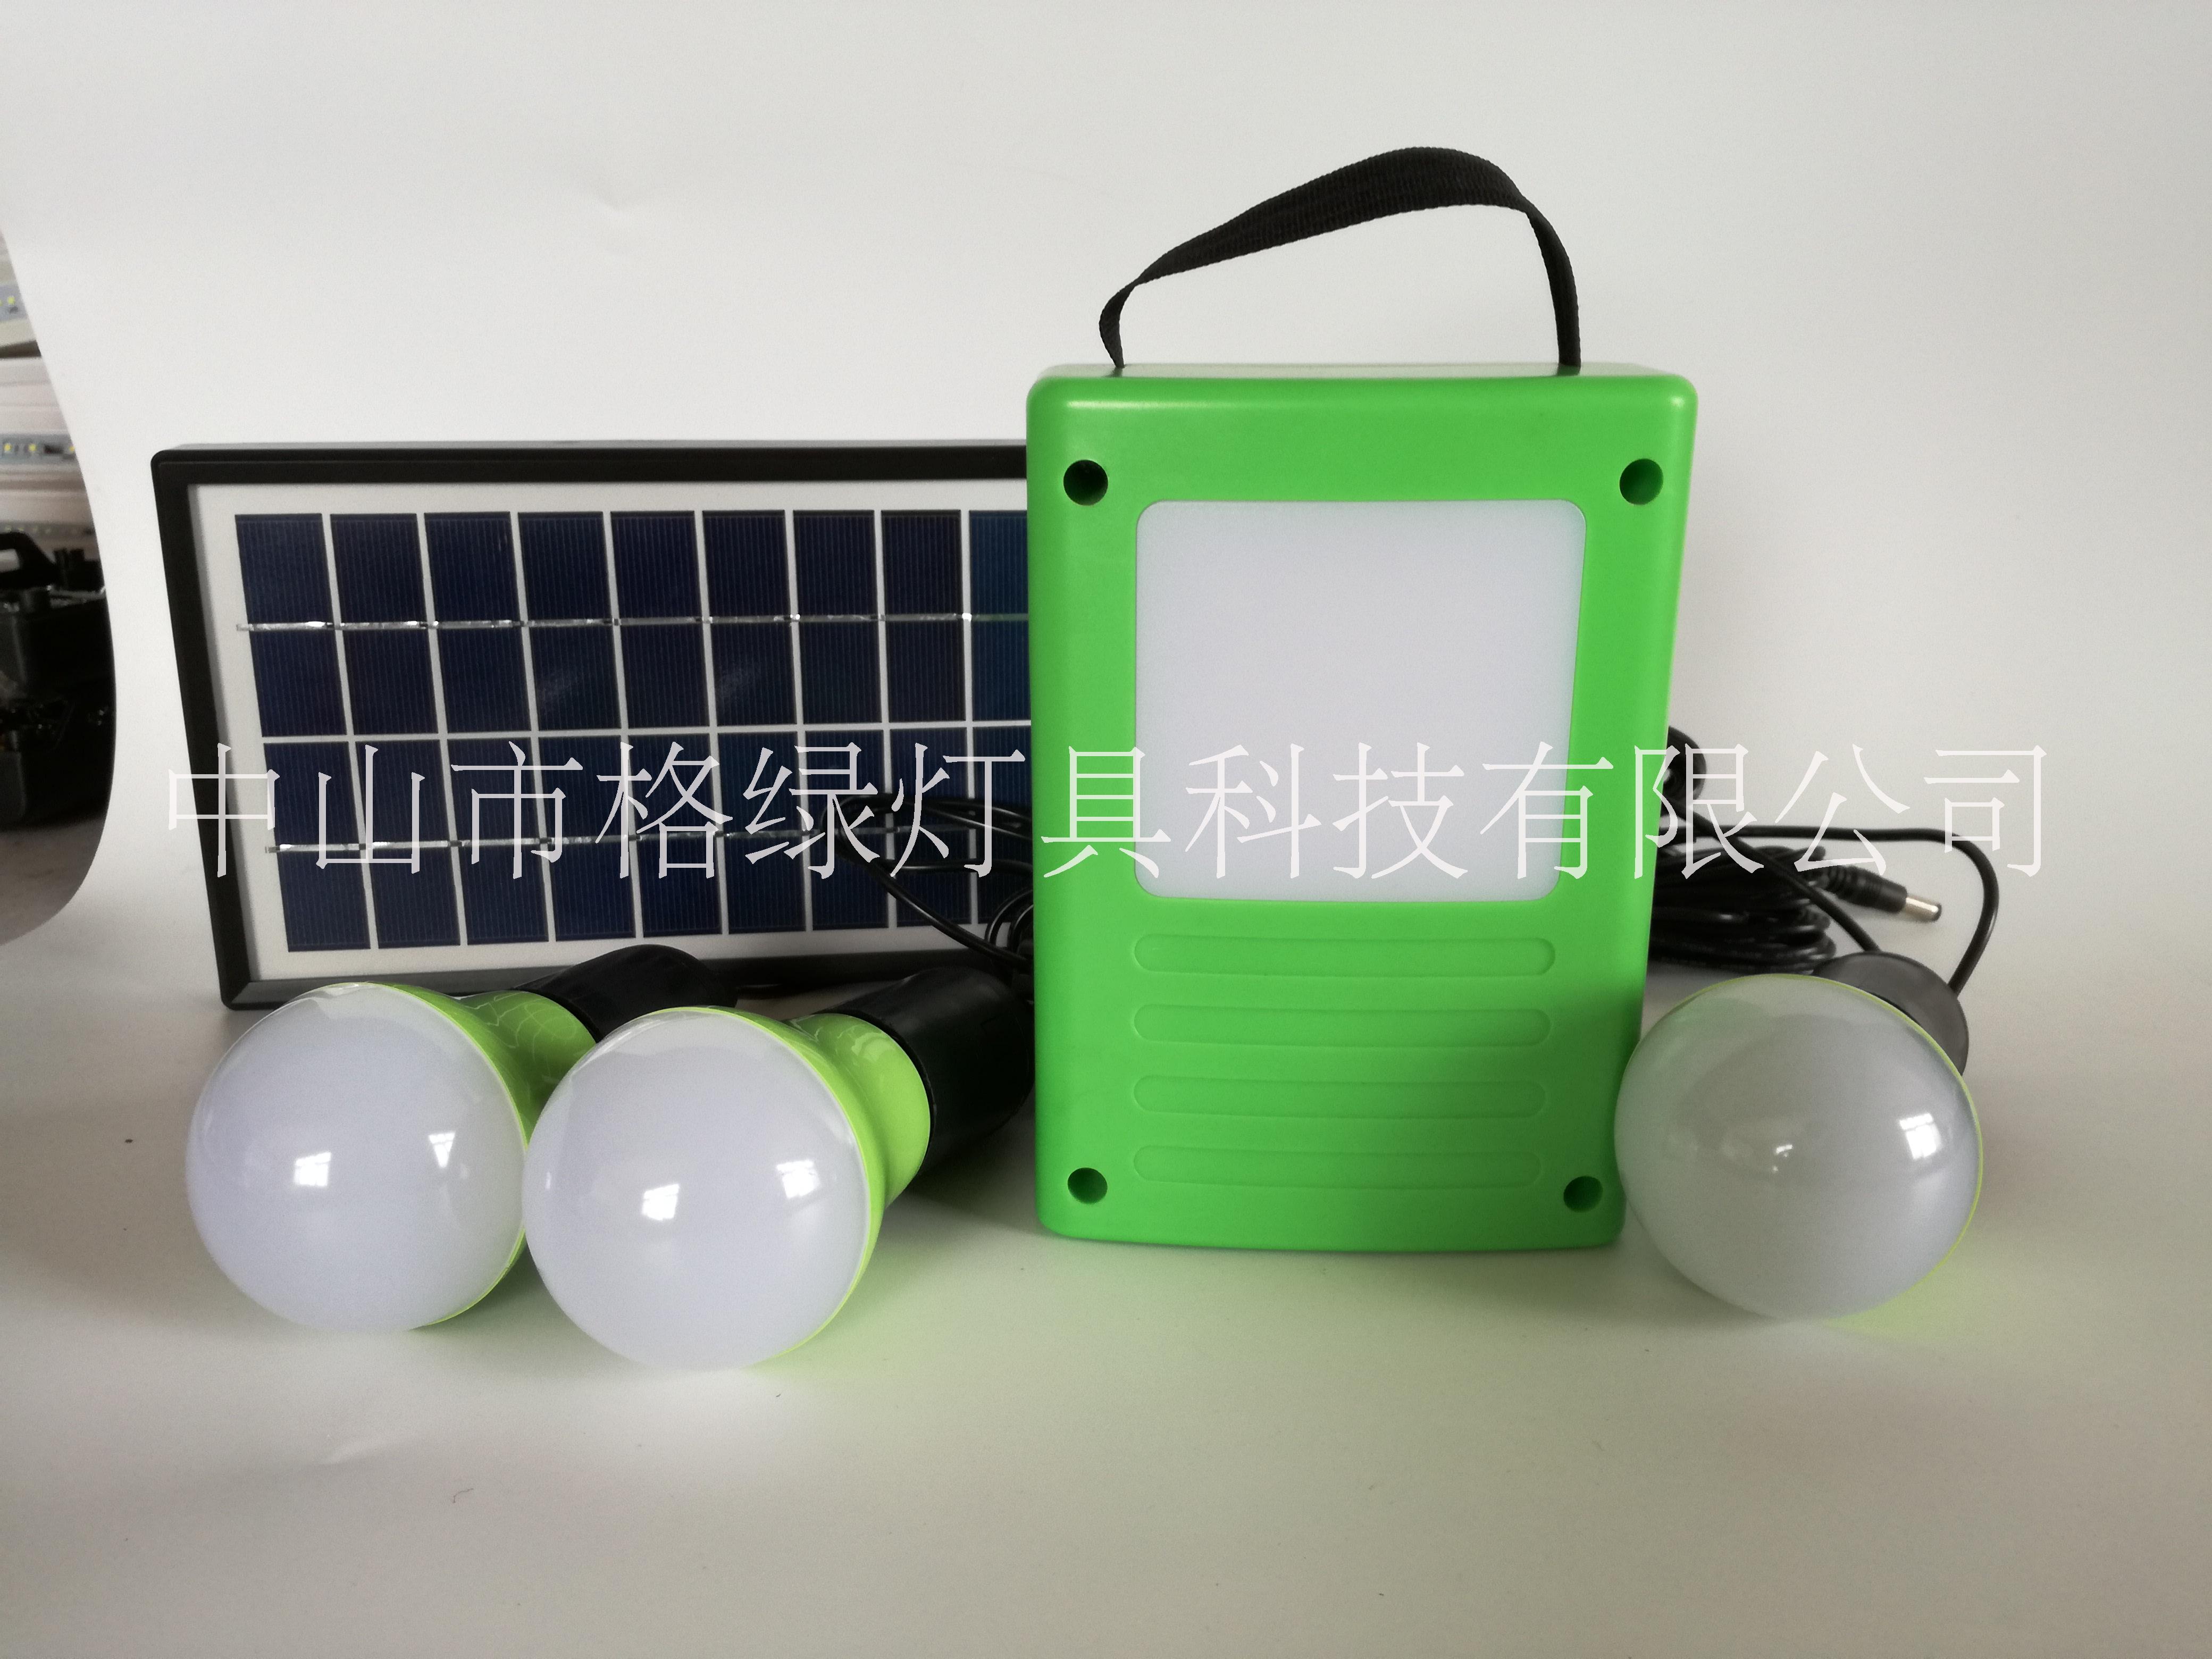 中山市格绿灯具科技有限公司专业生产家用太阳能光伏发电机